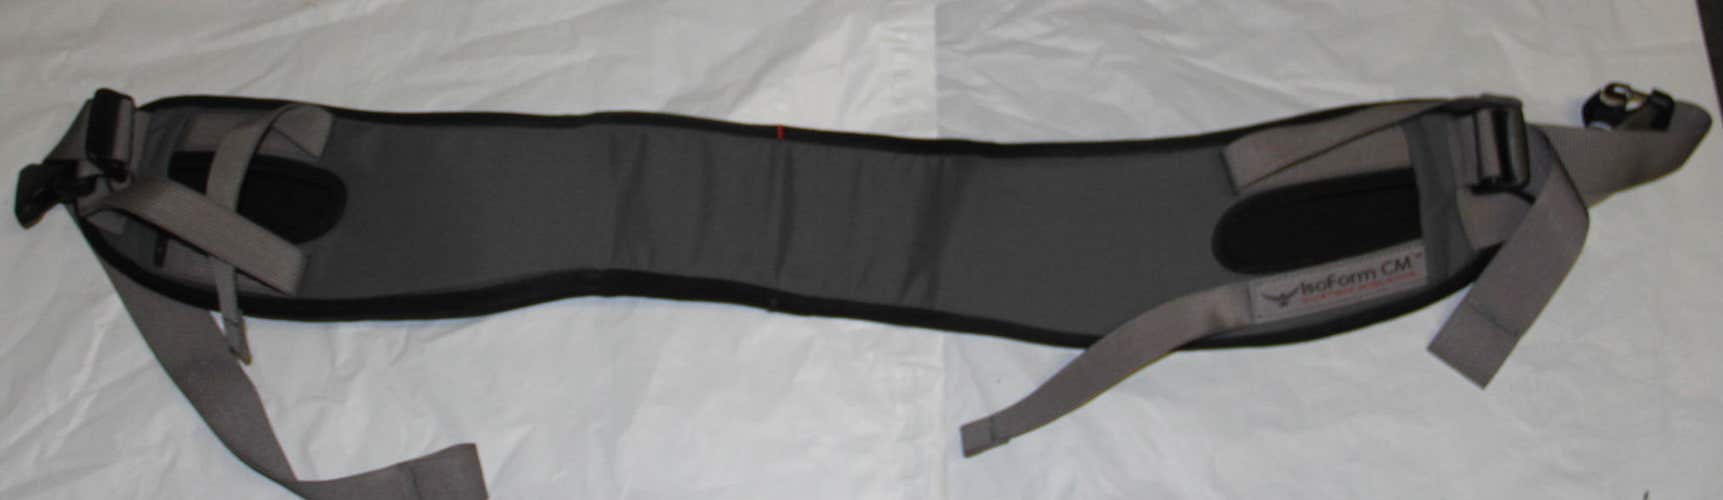 Osprey belt new size L